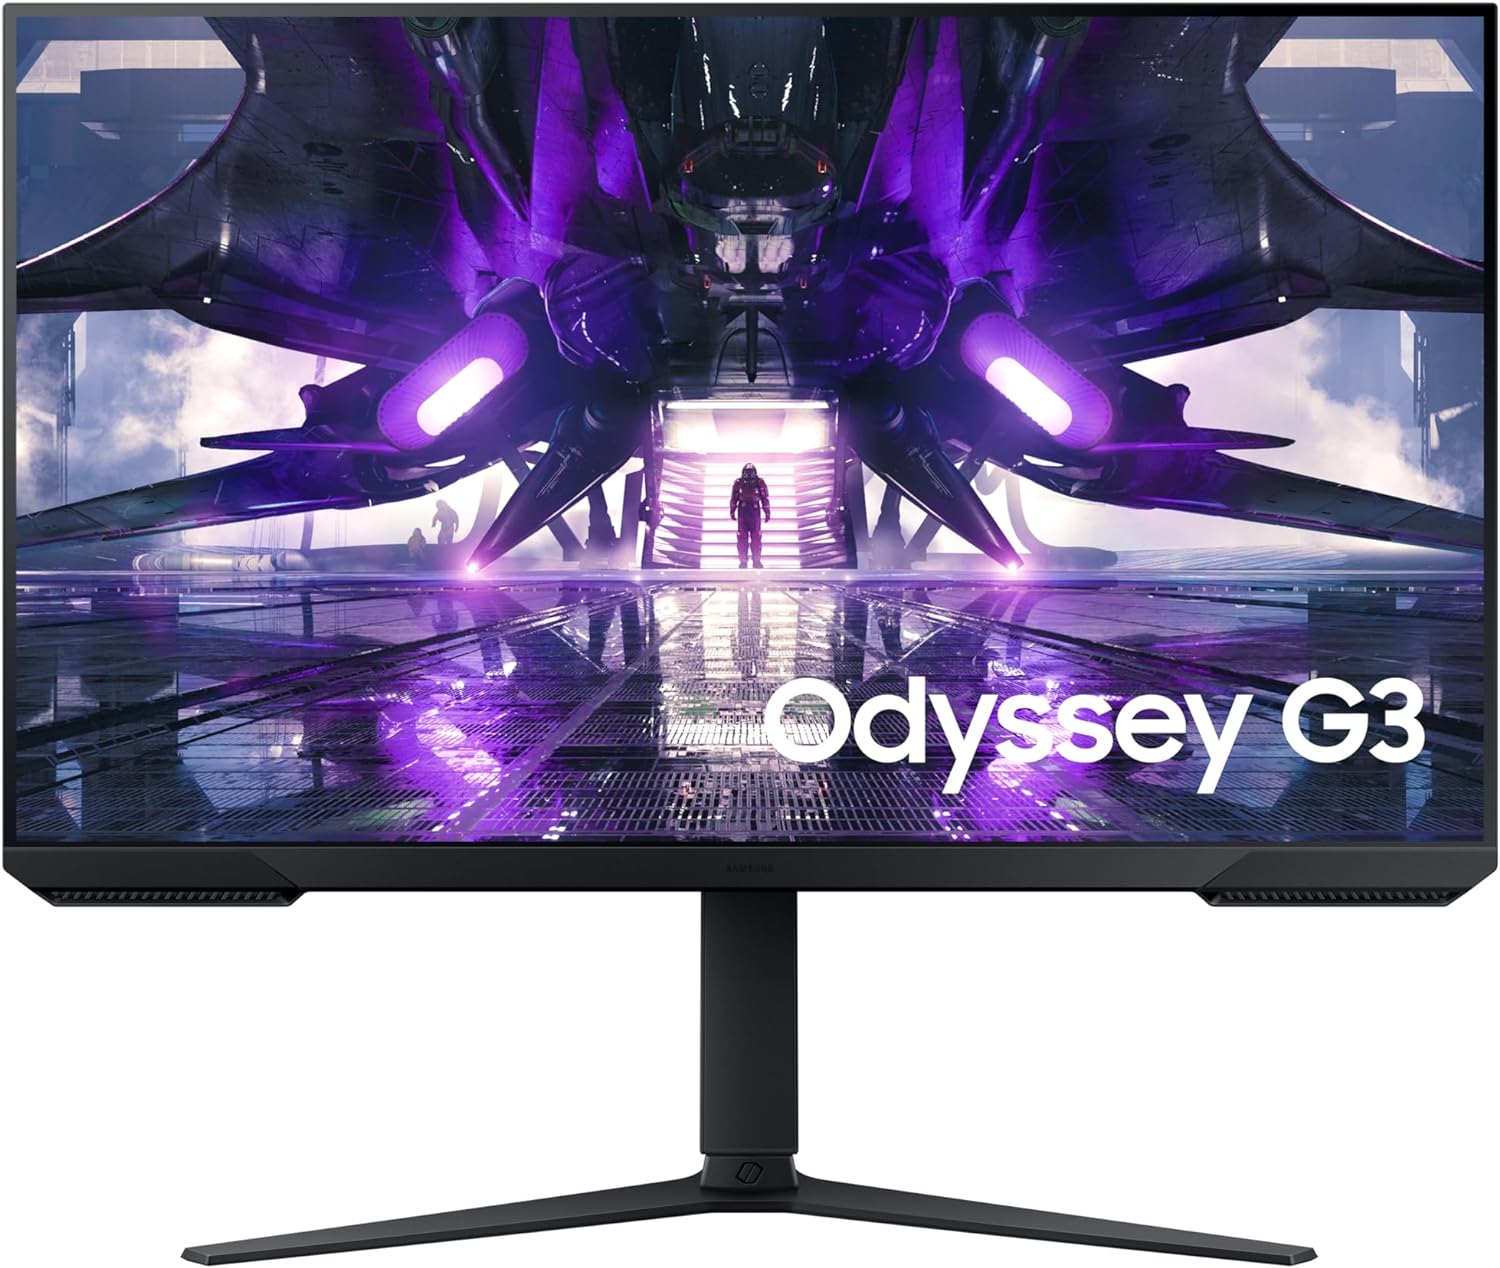 L'écran Gaming Samsung Odyssey G3 24 pouces en promotion avec -27% de  réduction - Boutique Apex Legends